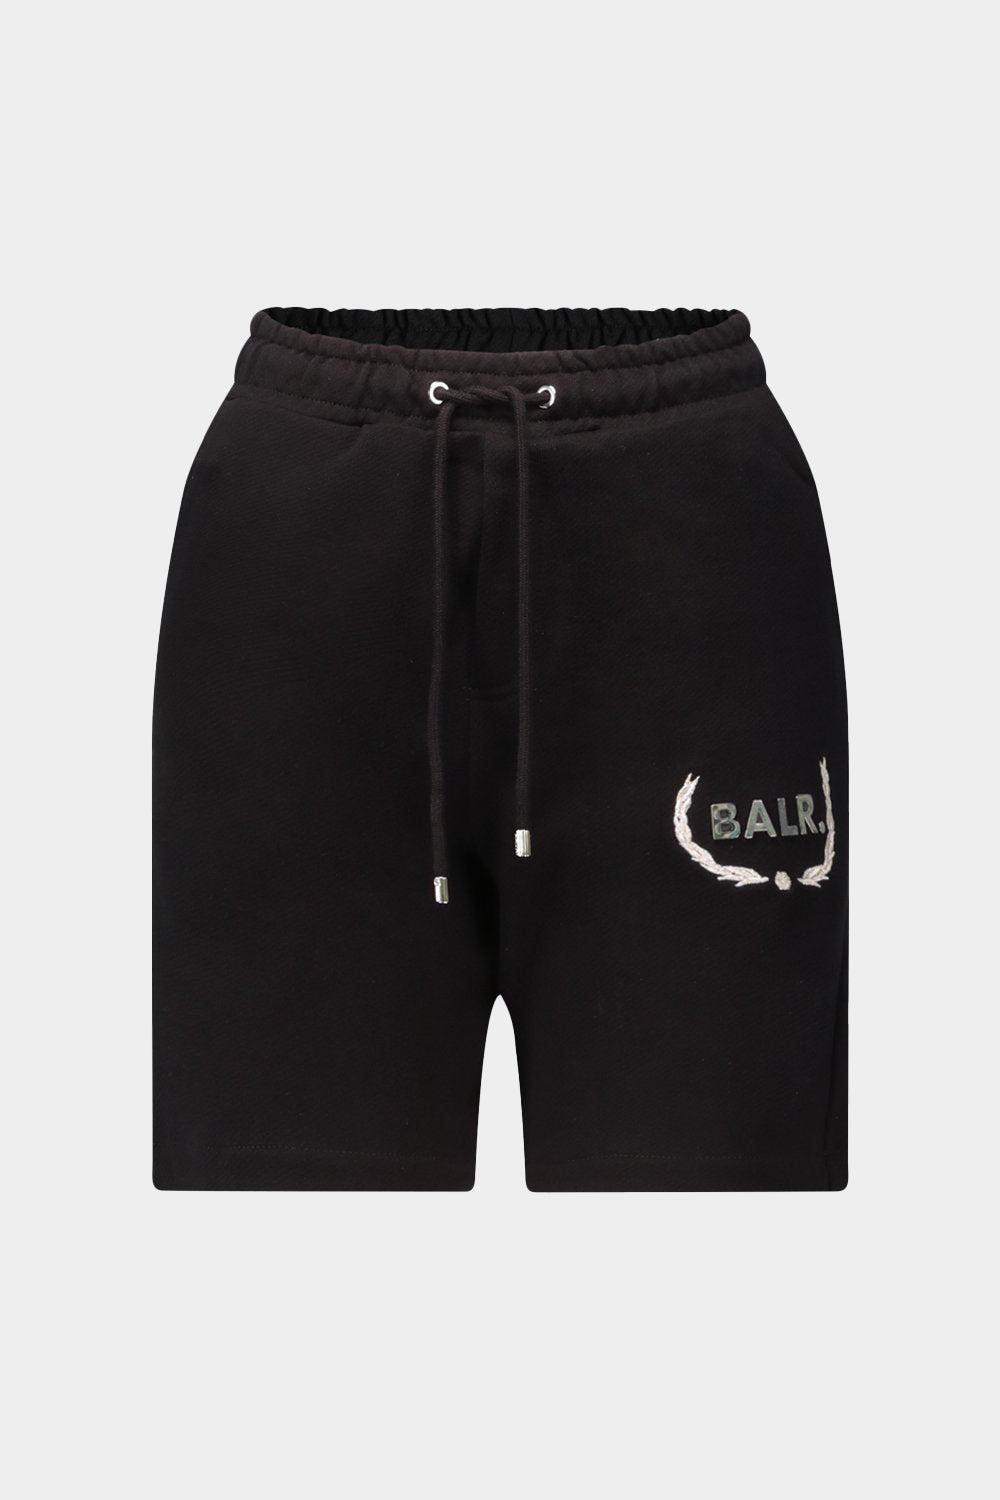 מכנסי פוטר לגברים תבליט לוגו BALR Vendome online | ונדום .